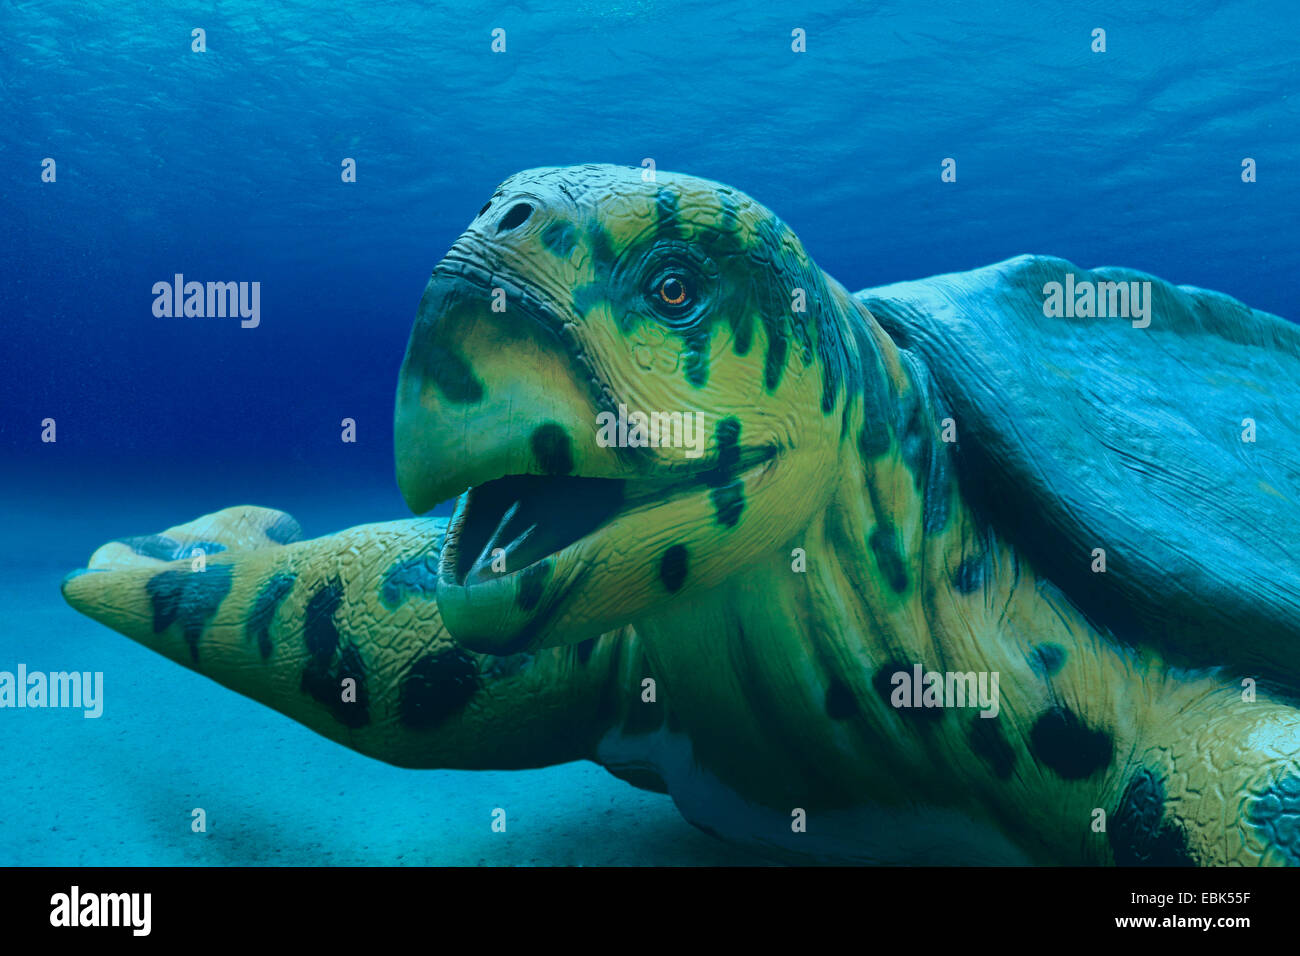 Archelon (Archelon ischyros), portrait under water, largest known seaa turtle, extinct Stock Photo